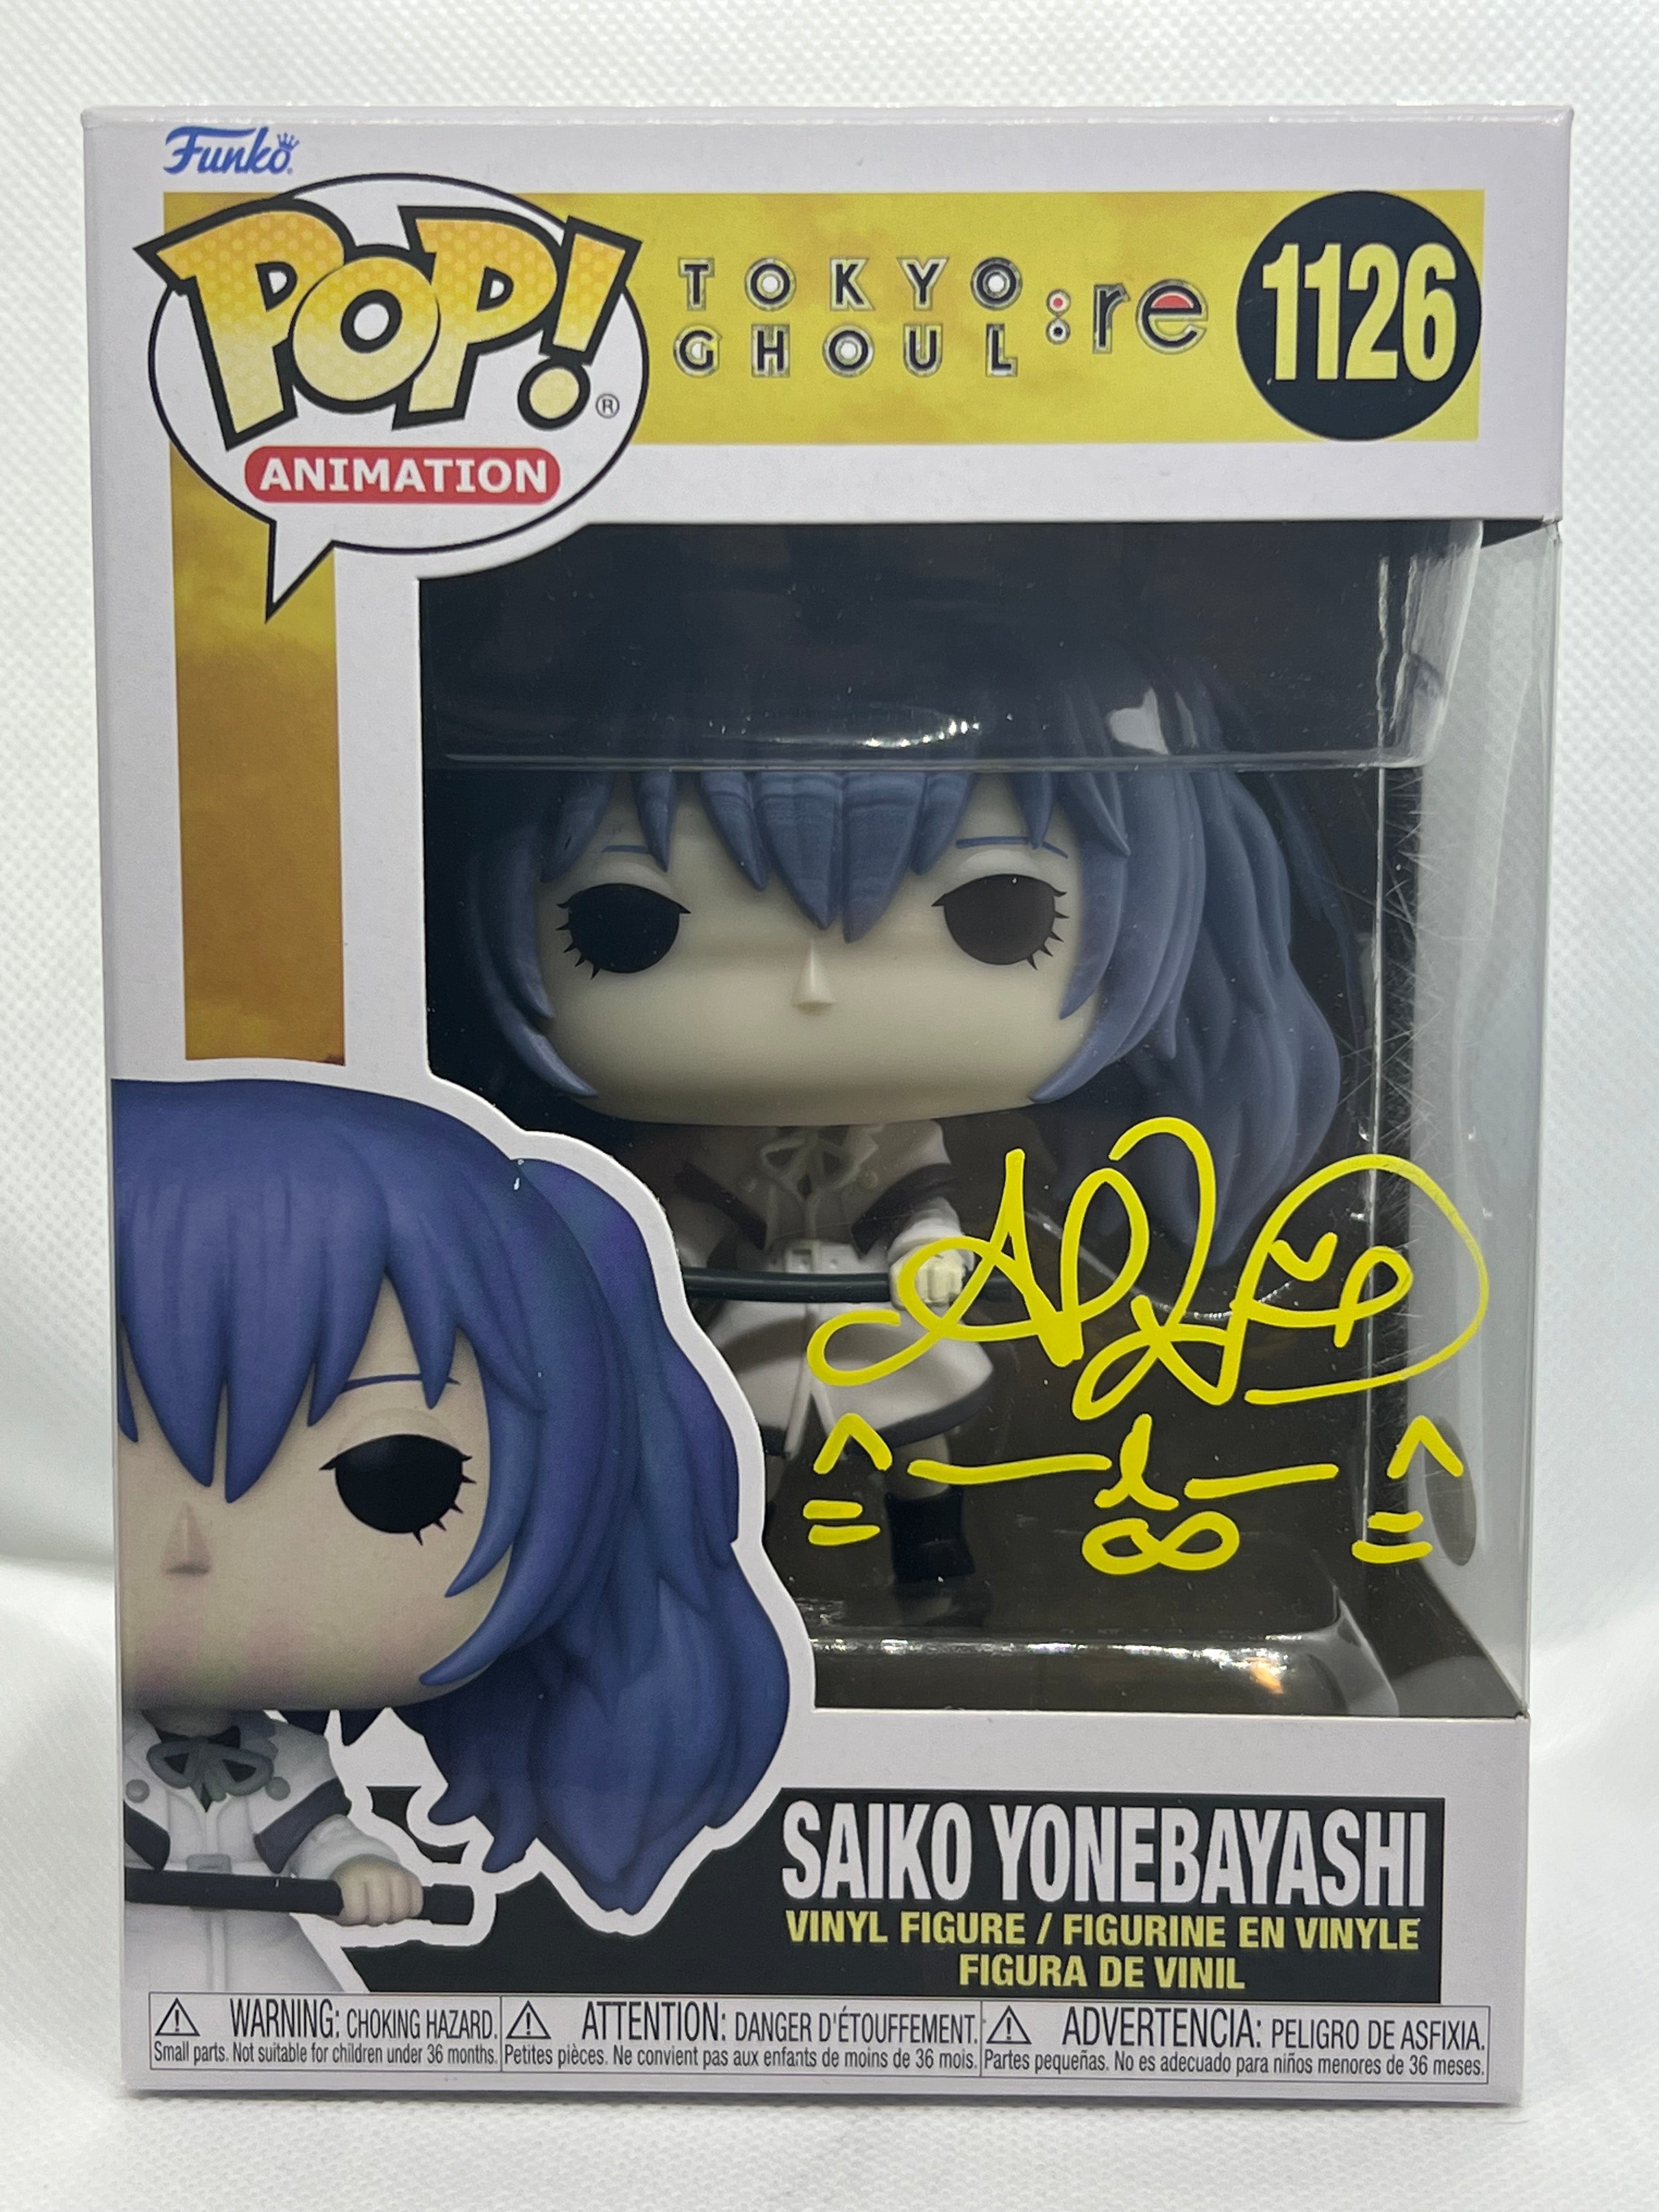 Saiko Yonashi #1126 Funko Pop! Tokyo Ghoul